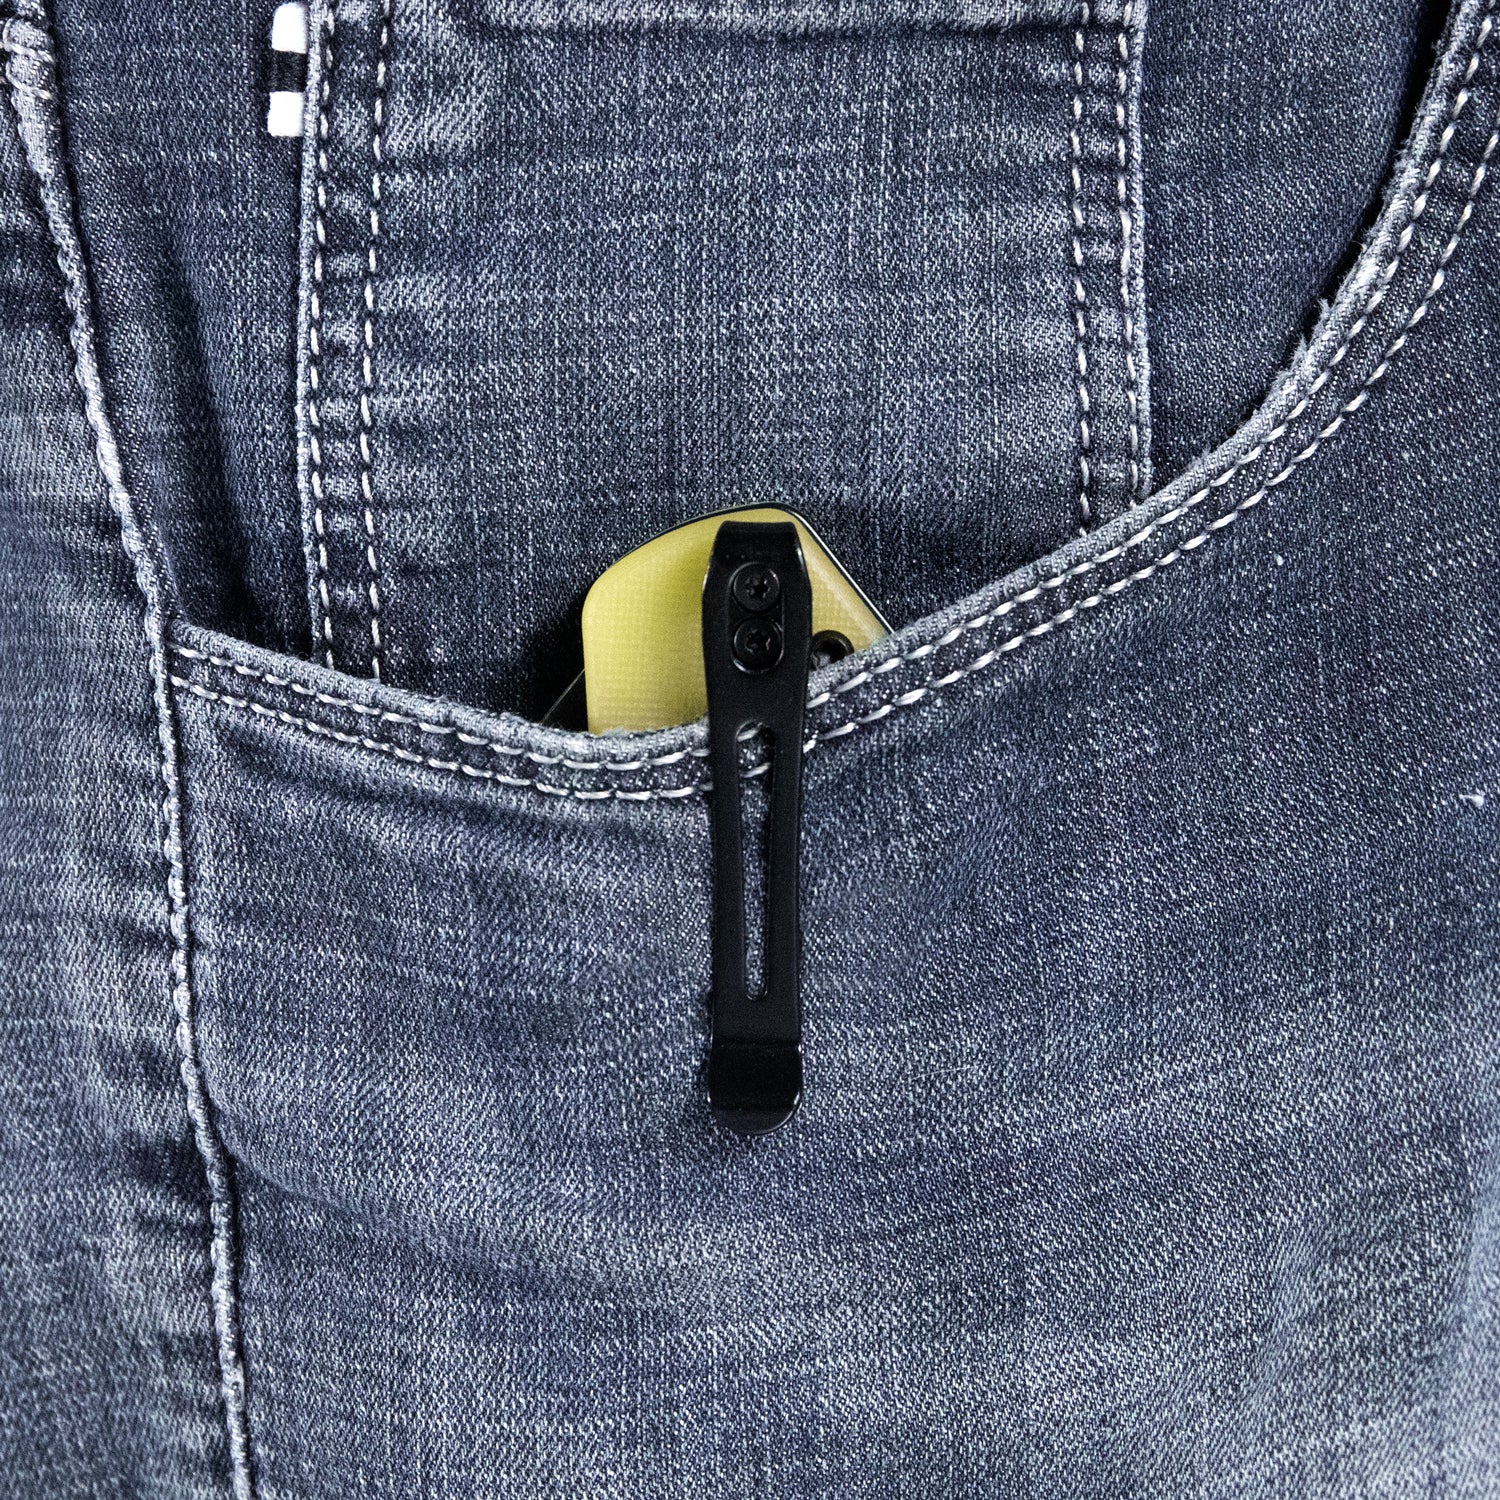 Kubey Duroc Liner Lock Flipper Small Pocket Folding Knife Translucent Yellow G10 Handle 2.91" Black Stonewashed AUS-10 KU332H